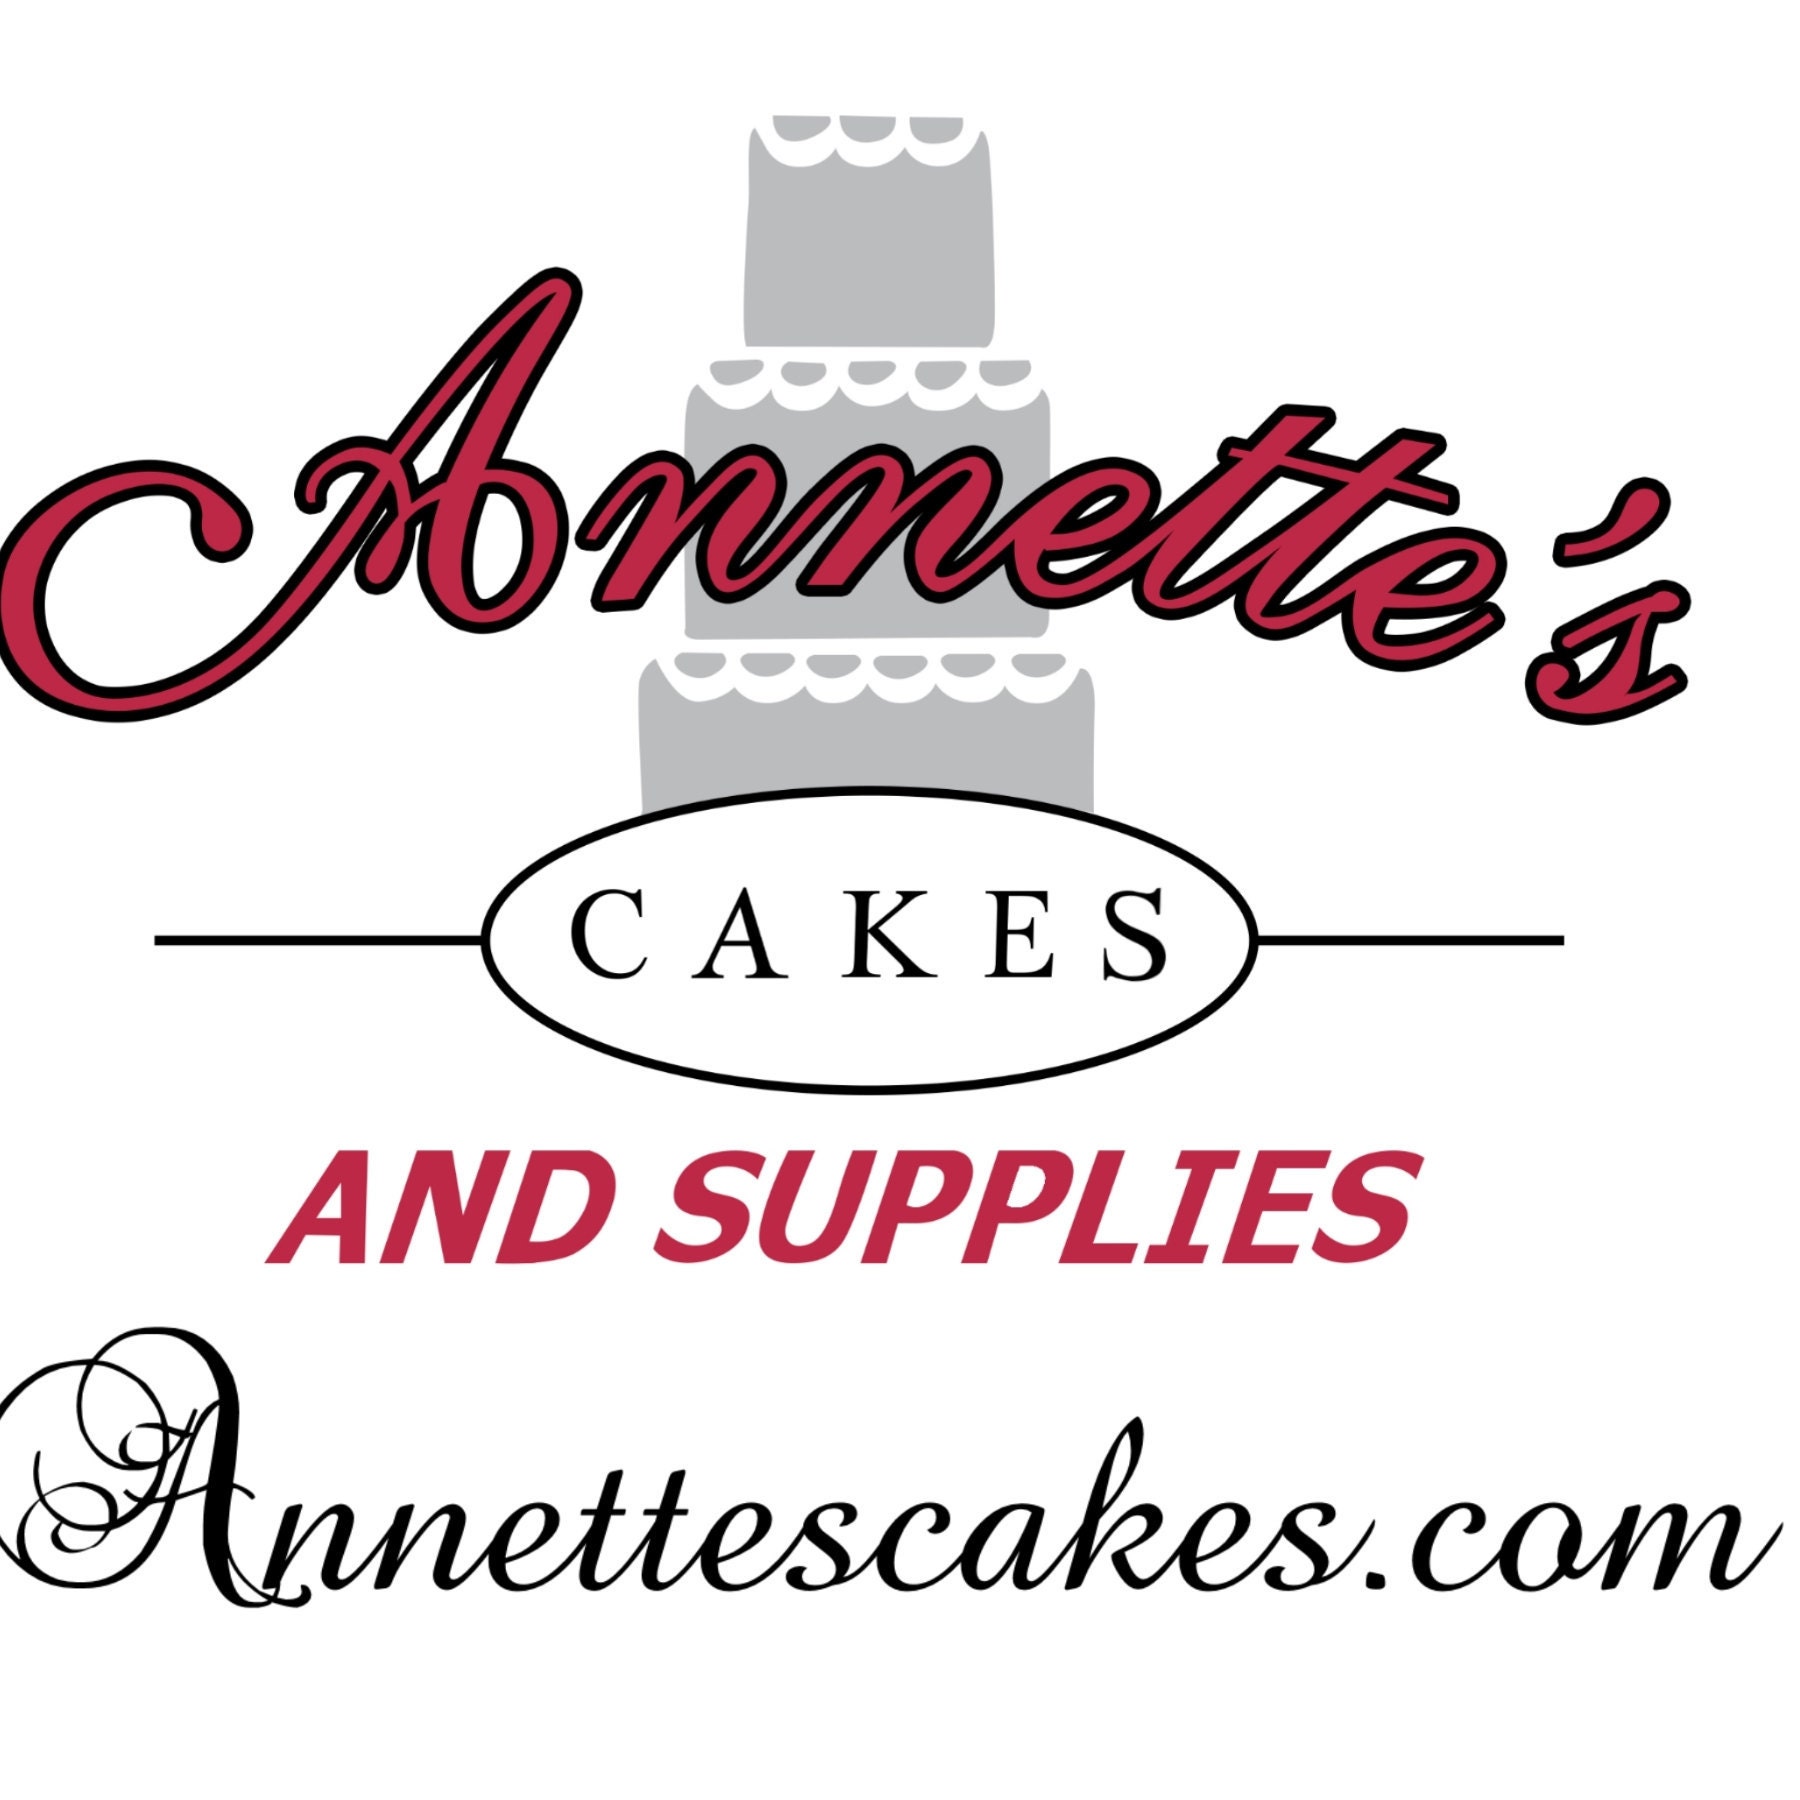 City Skyline 2 Cake Stencil - Annettes Cake Supplies